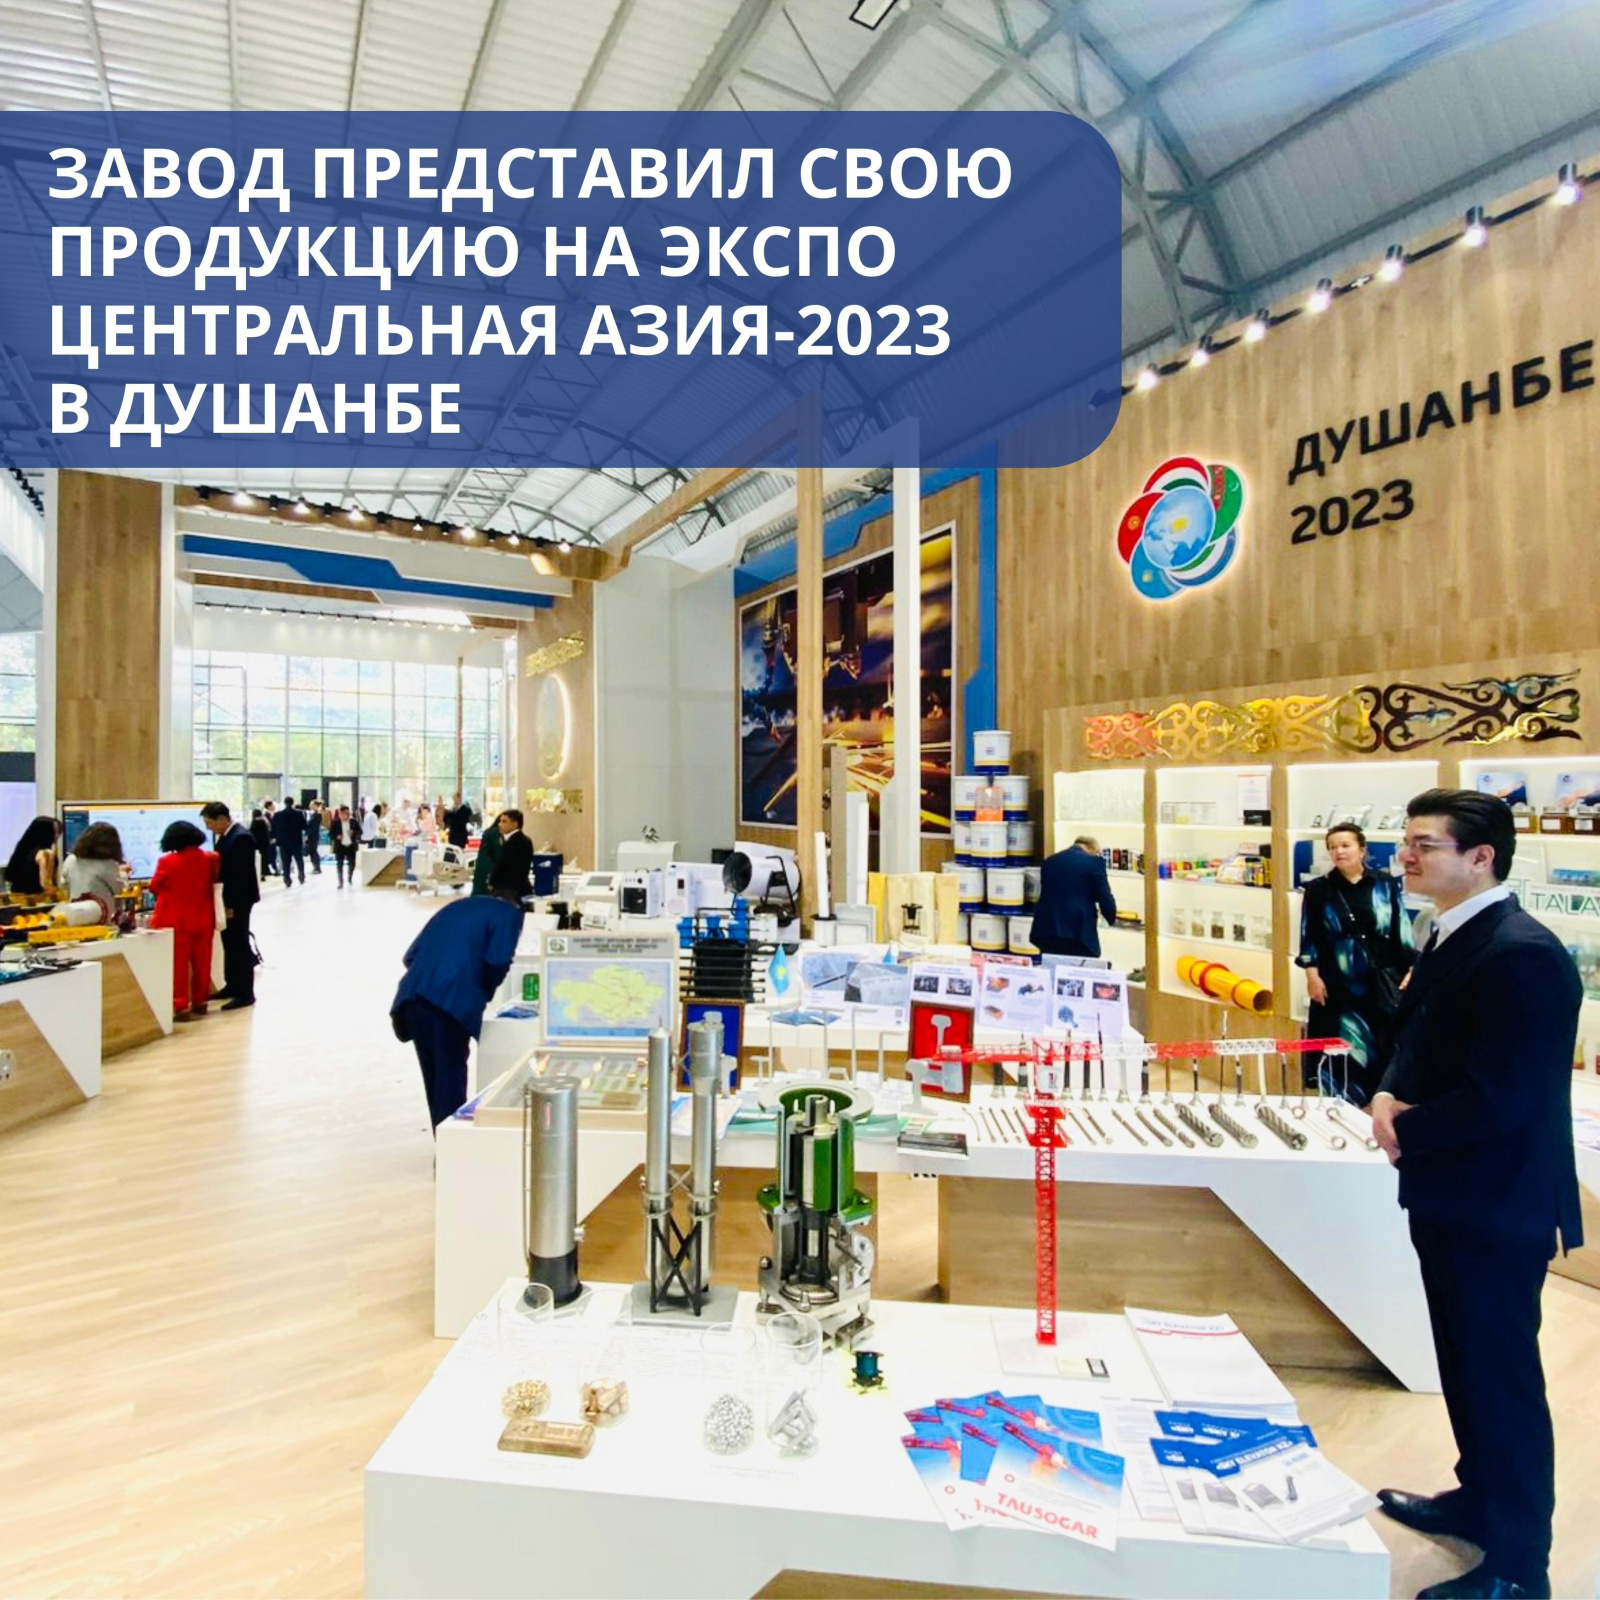 Завод представил свою продукцию на «ЭКСПО Центральная Азия-2023» в Душанбе